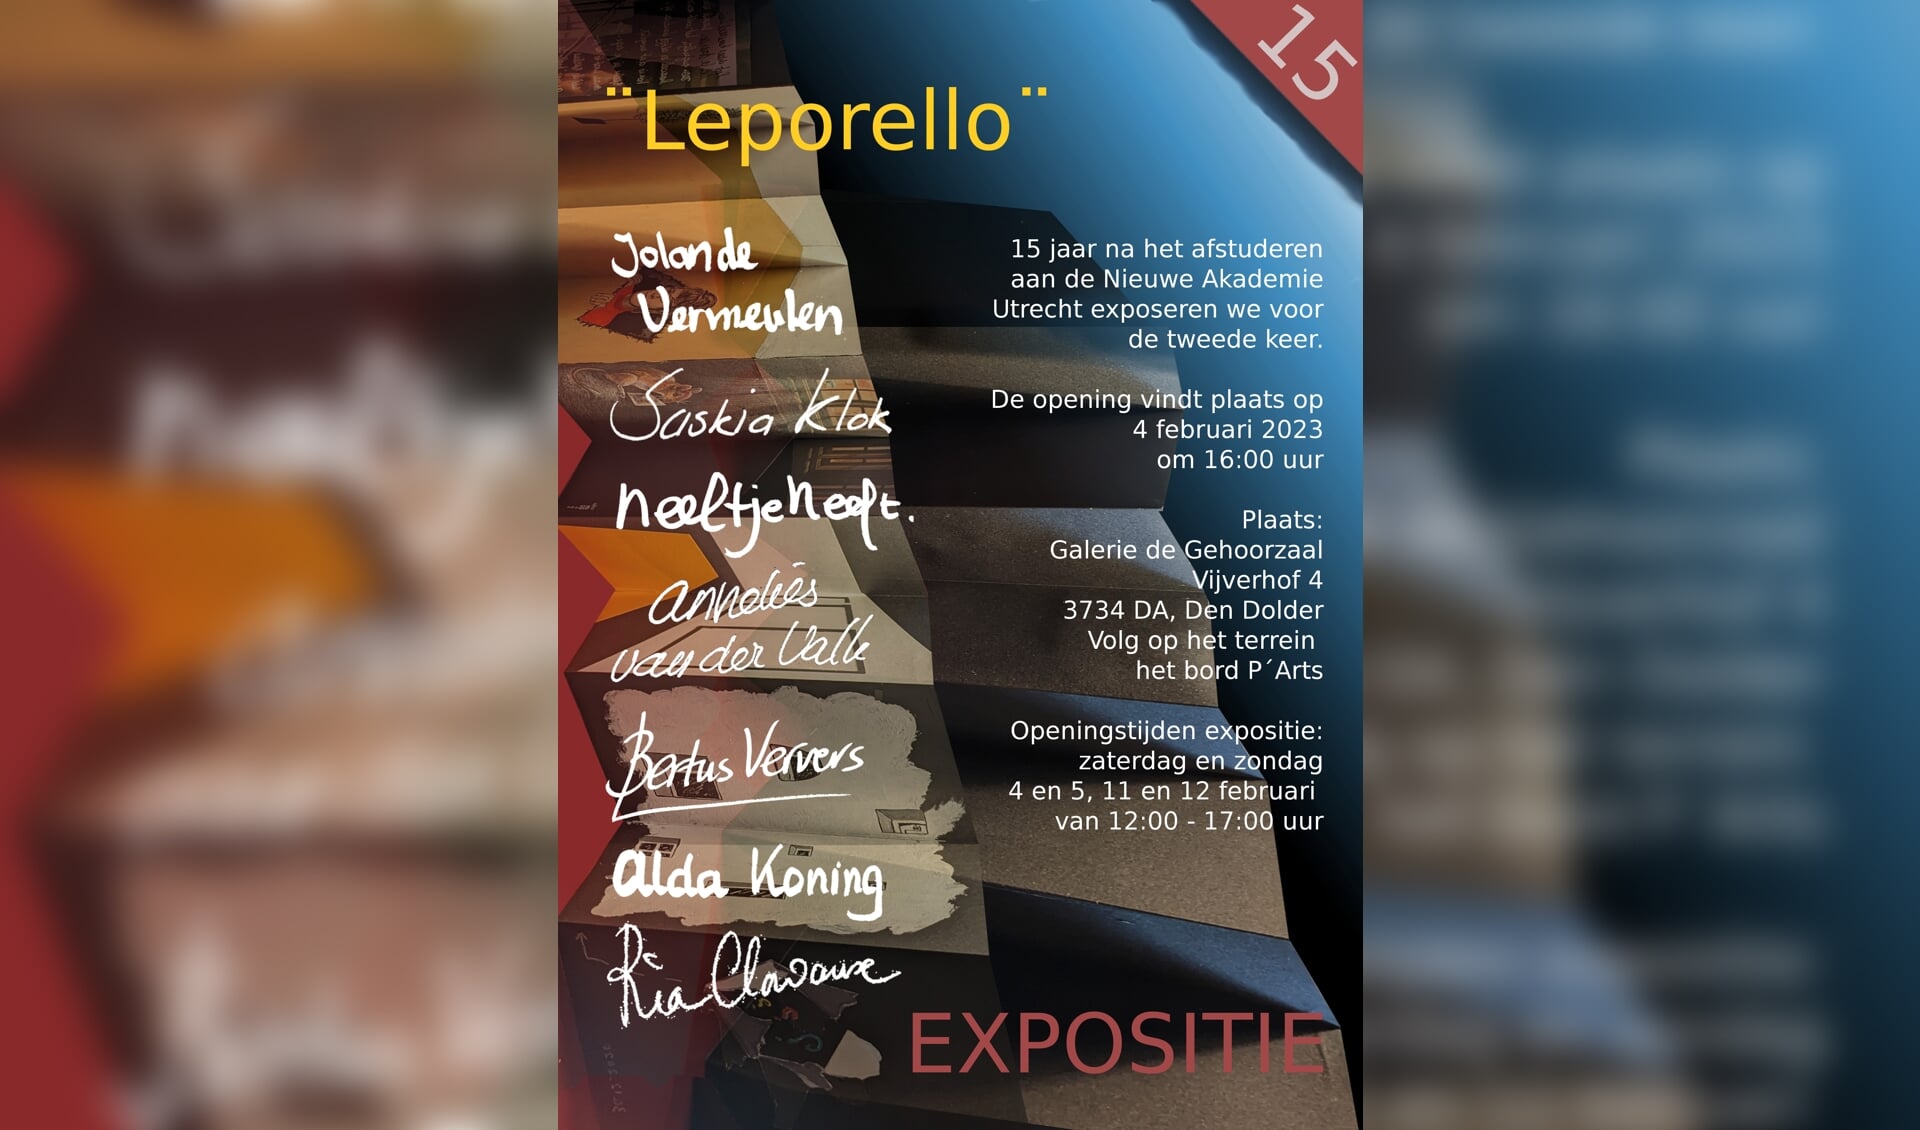 Exposlitie Leporello